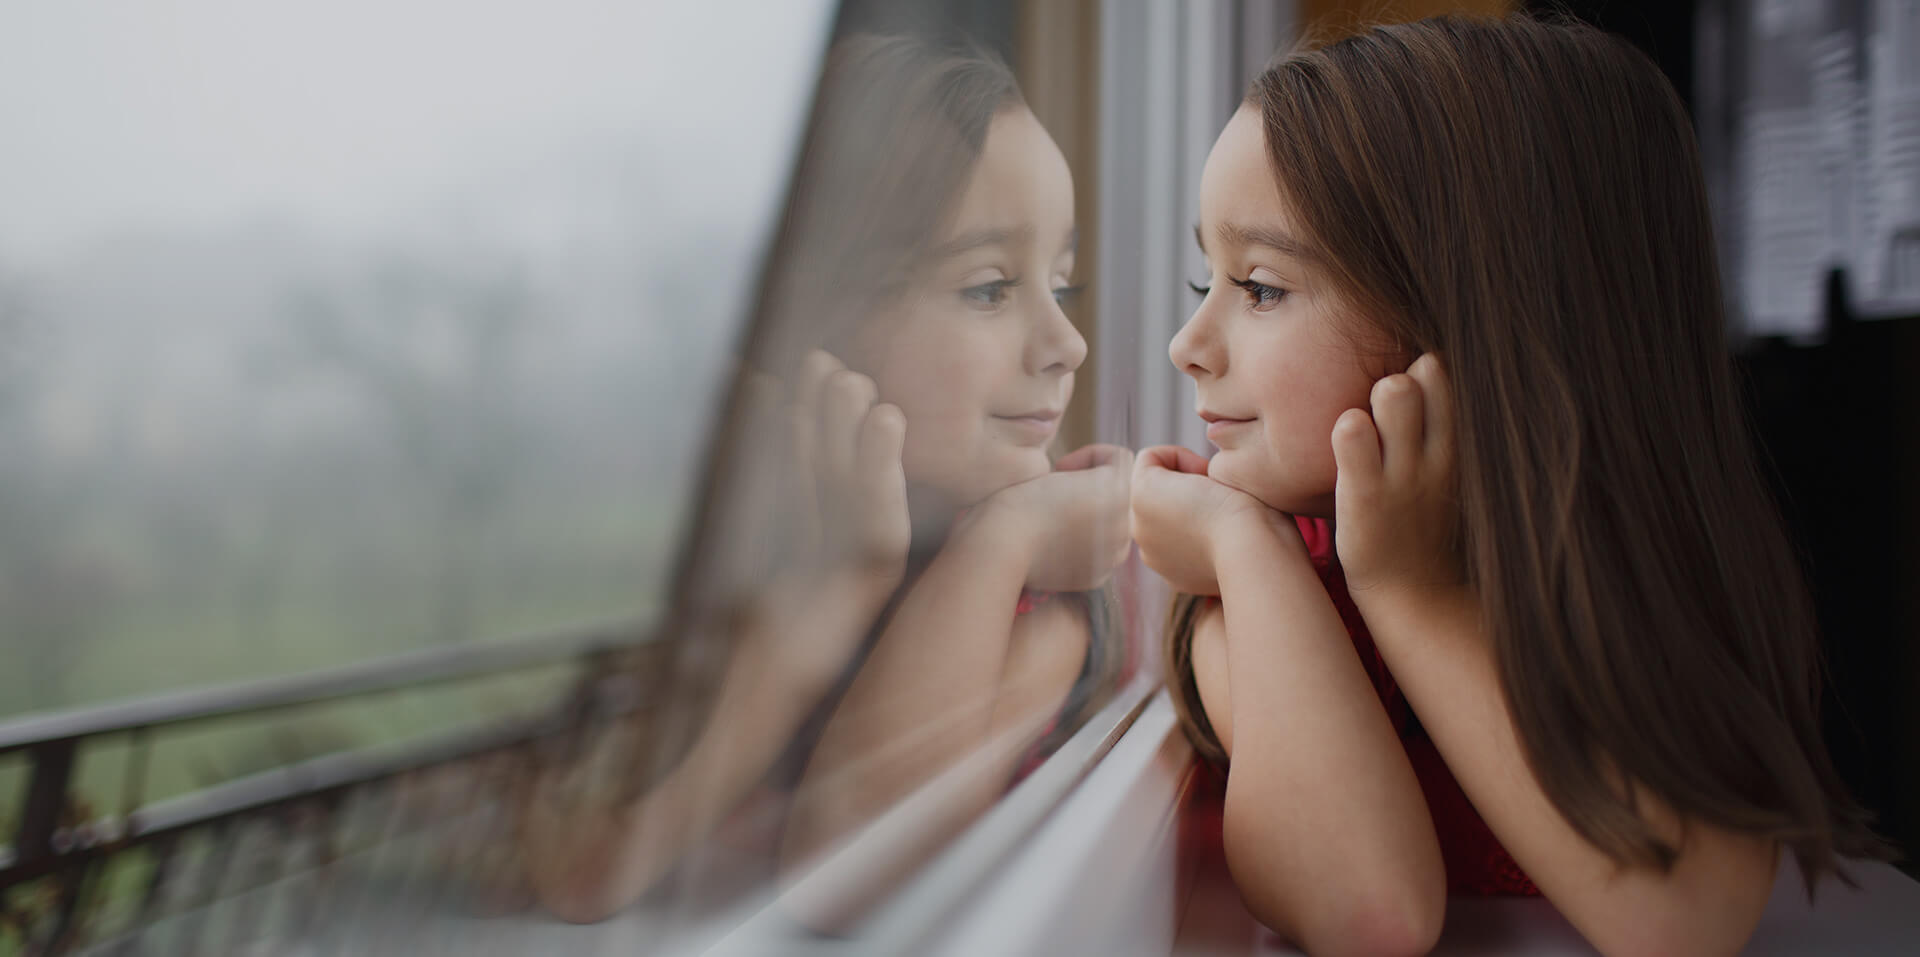 Photo d’atmosphère montrant une enfant regardant par la fenêtre, ainsi que son reflet